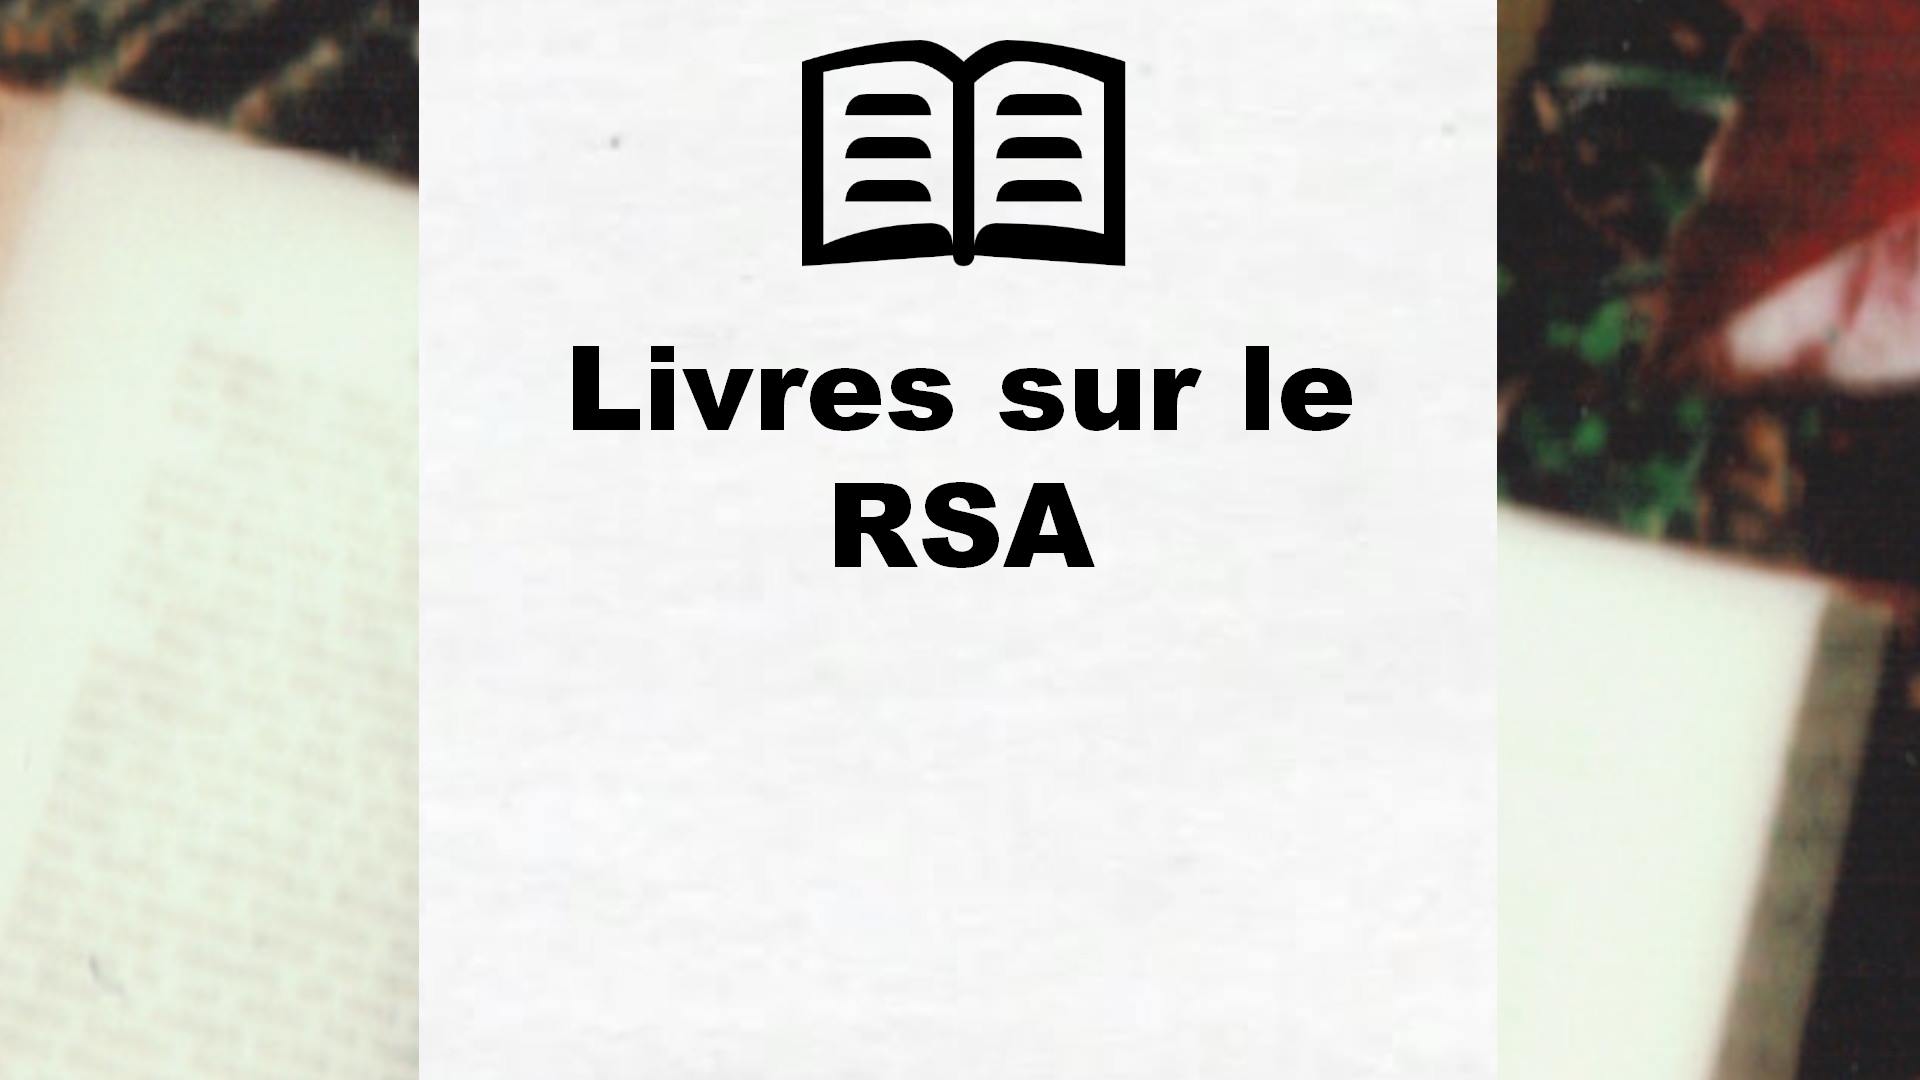 Livres sur le RSA